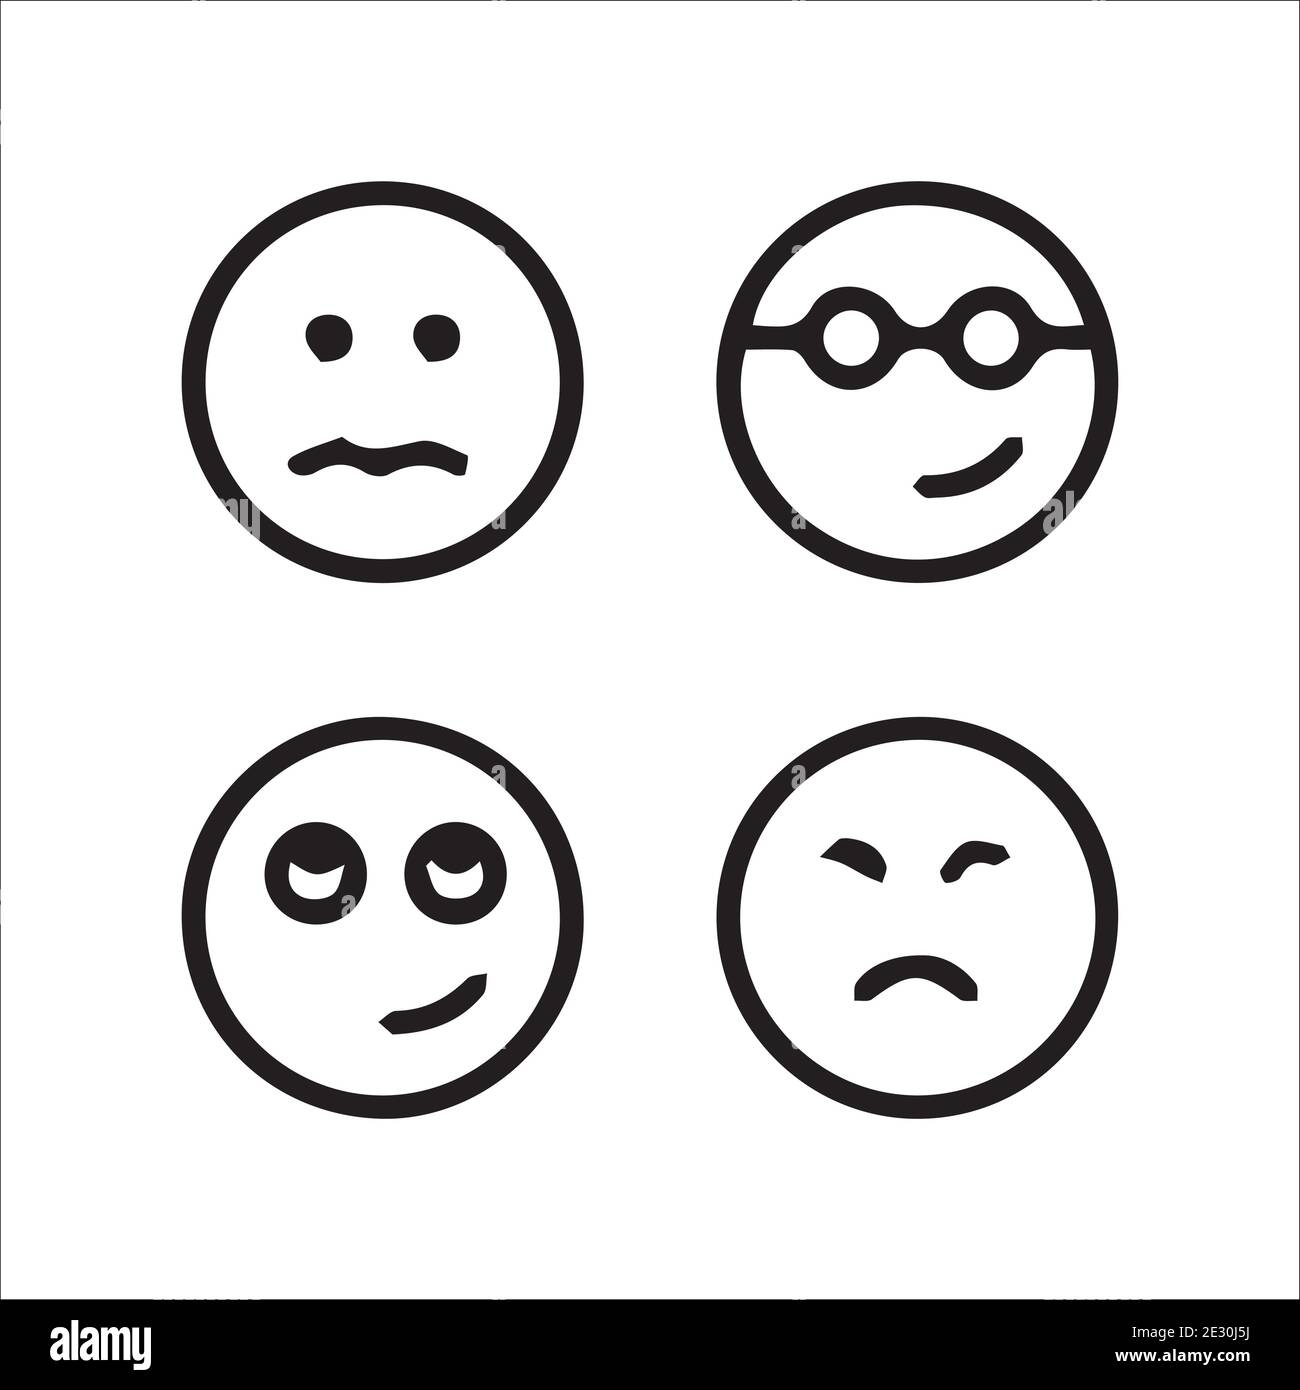 creative emojis set collection Stock Vector